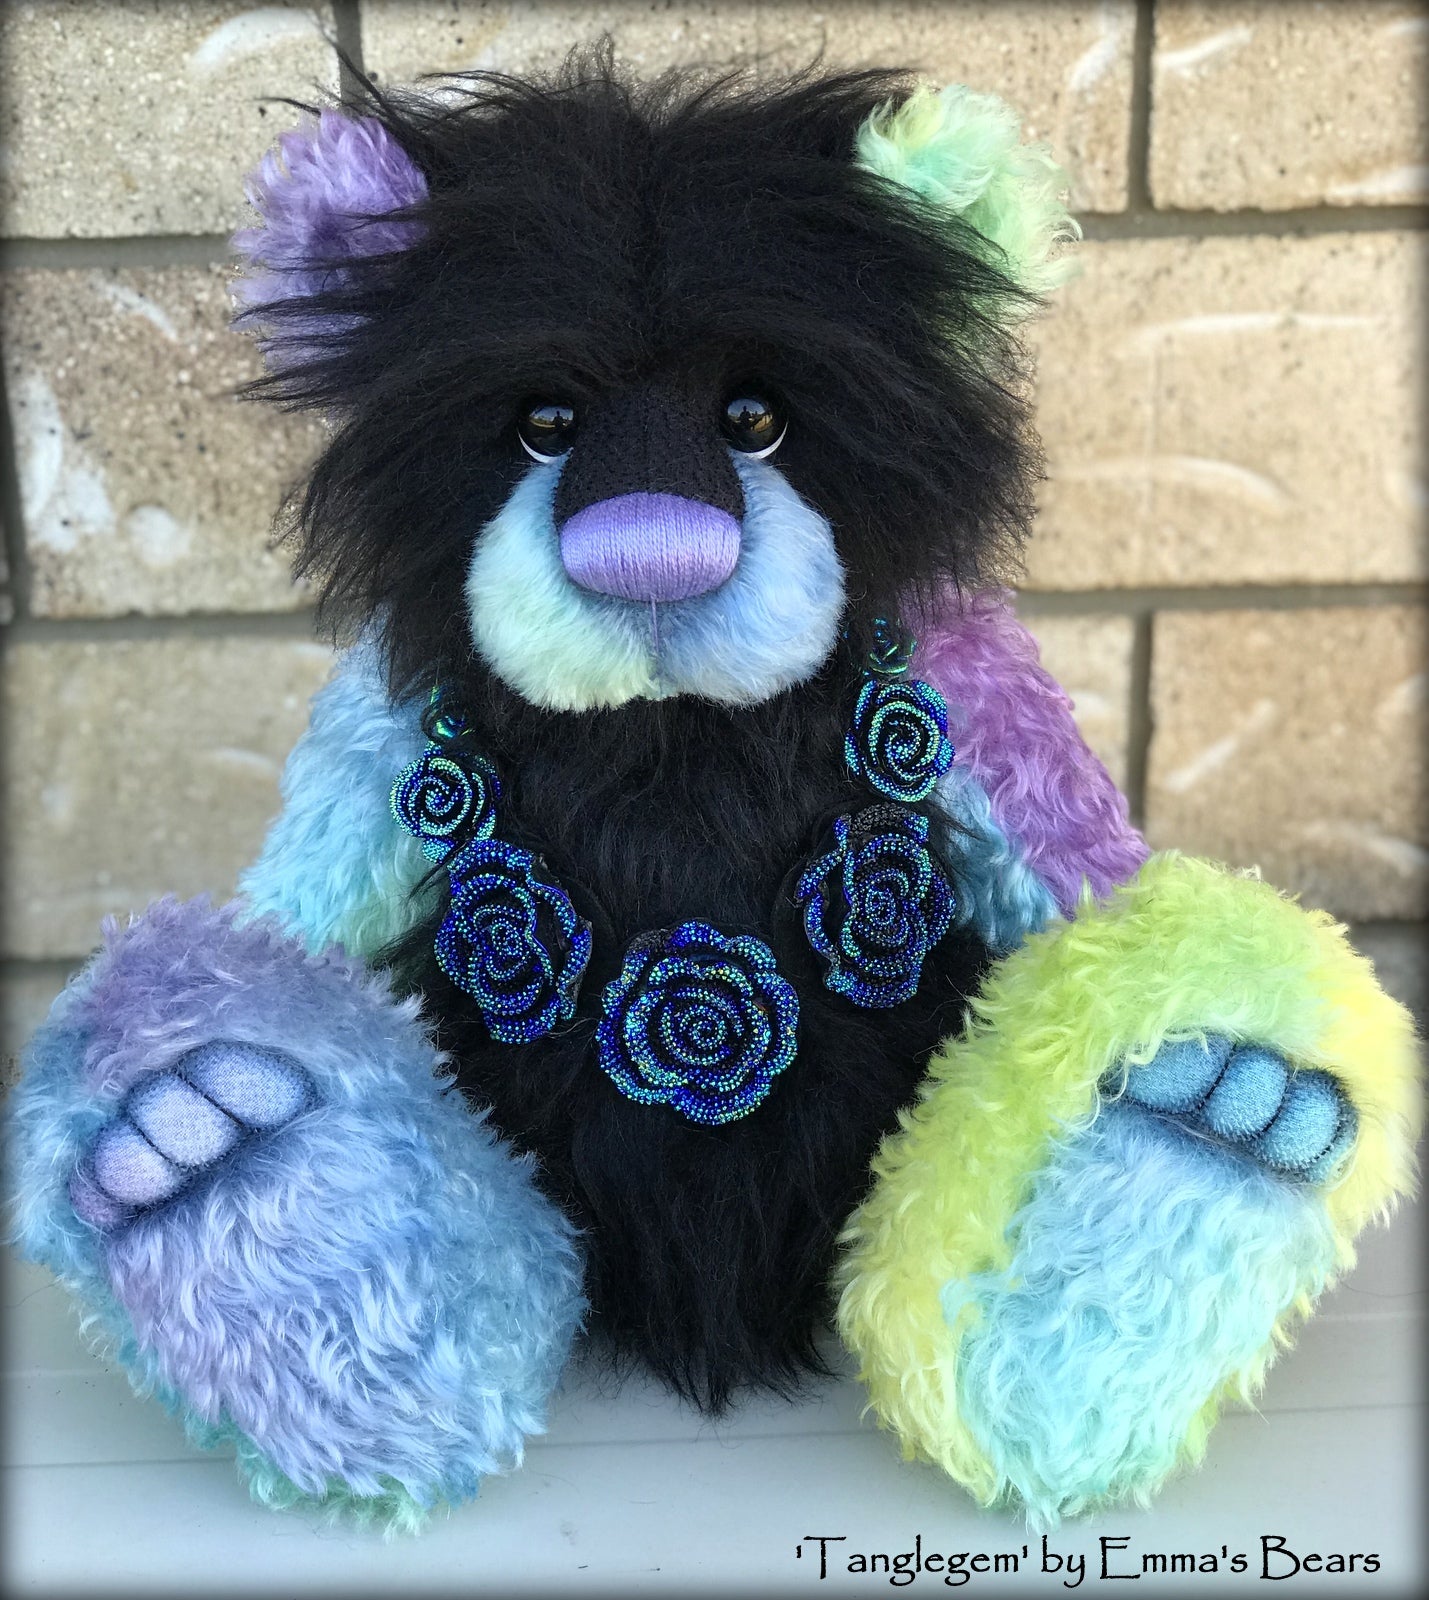 Tanglegem - 17" Rainbow and Black Mohair Artist Bear by Emma's Bears - OOAK